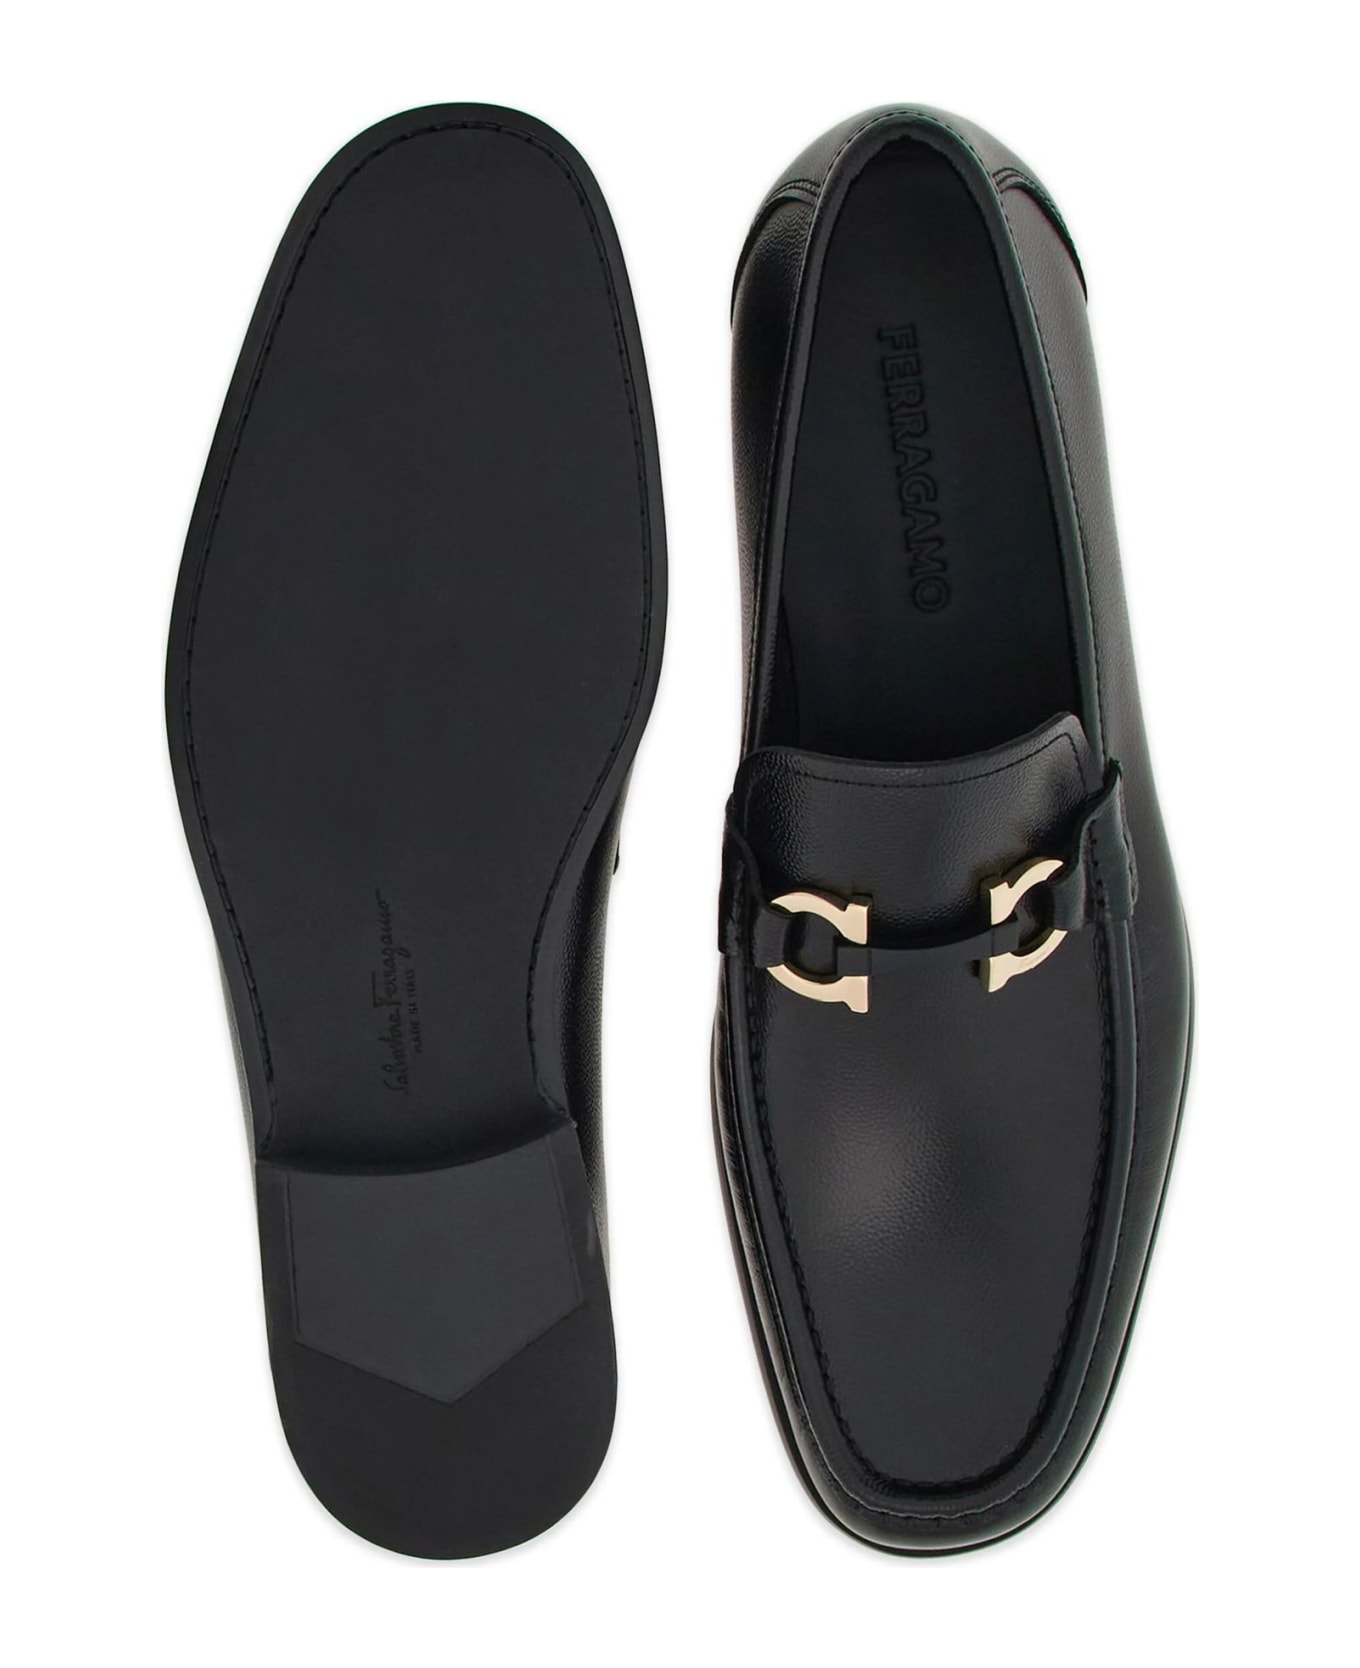 Ferragamo Black Leather Loafer - Black